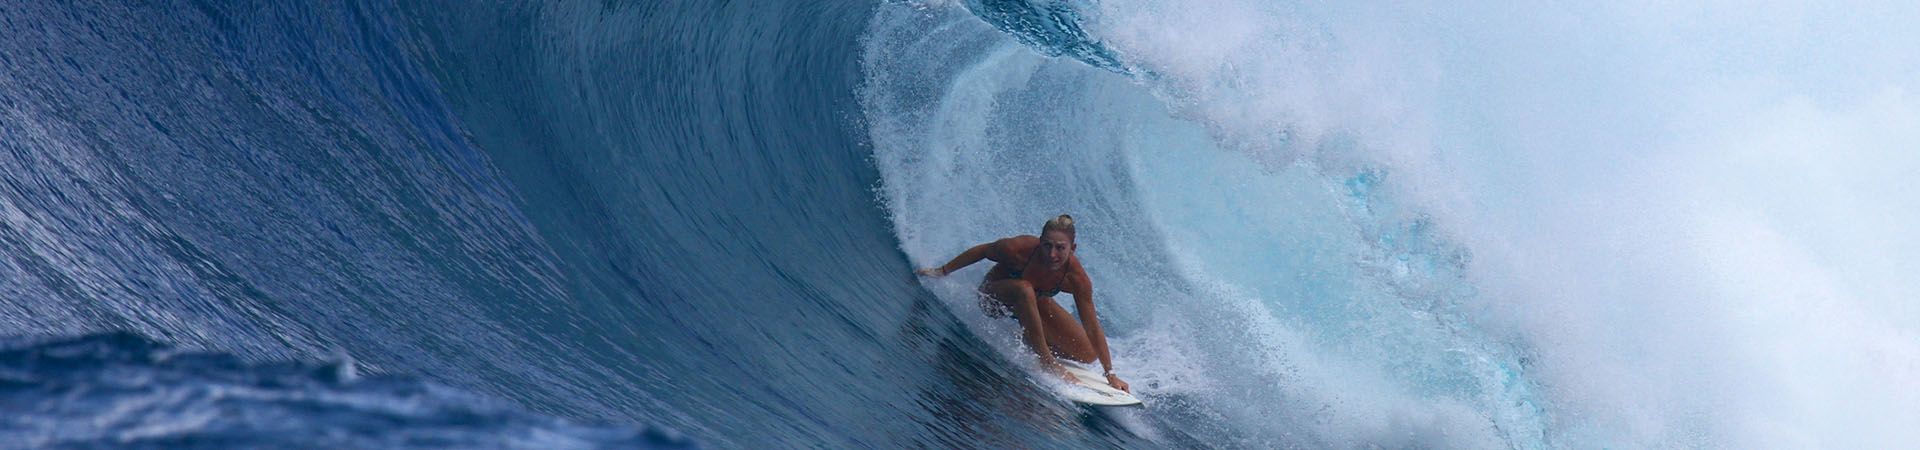 mannetje Opiaat zoeken Surfen, Windsurfen & Kitesurfen –Sporten met veel actie